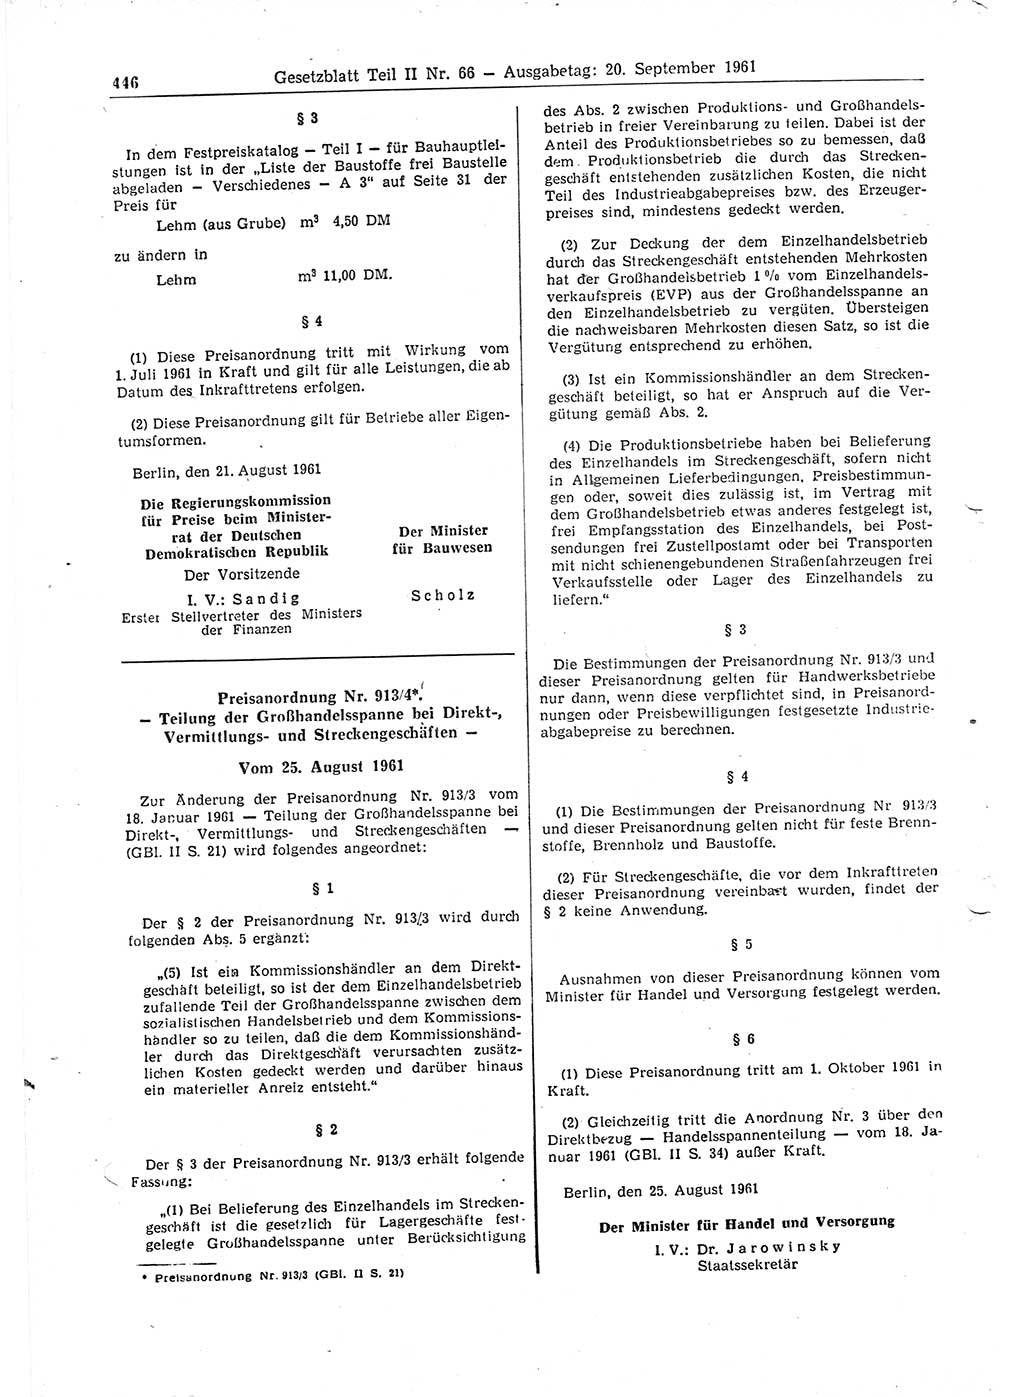 Gesetzblatt (GBl.) der Deutschen Demokratischen Republik (DDR) Teil ⅠⅠ 1961, Seite 446 (GBl. DDR ⅠⅠ 1961, S. 446)